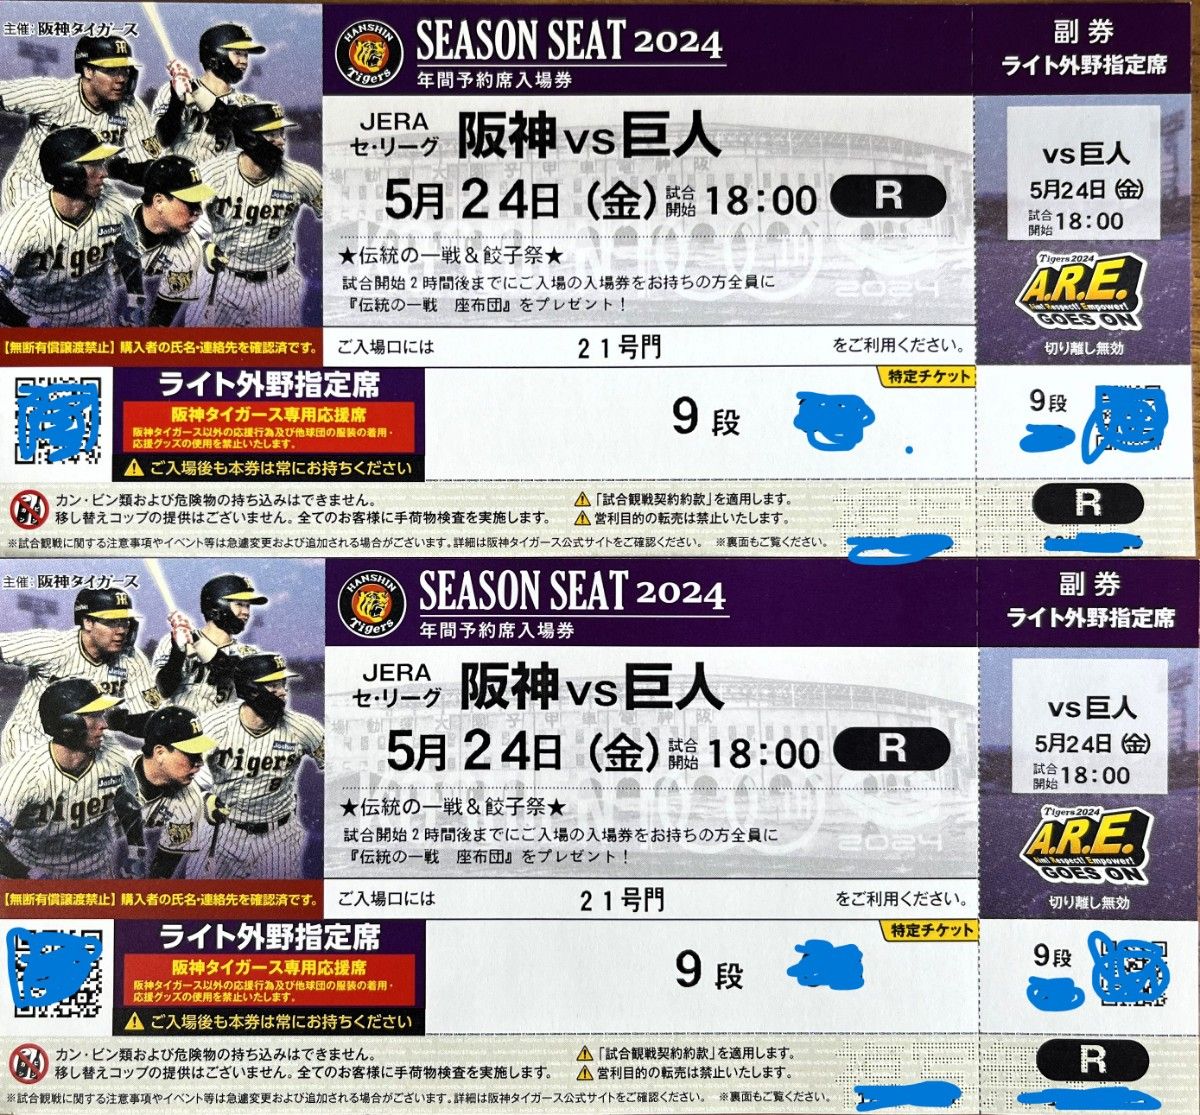 5/24(金)阪神 vs 巨人 甲子園 外野指定席ライト側 9段 2枚連番